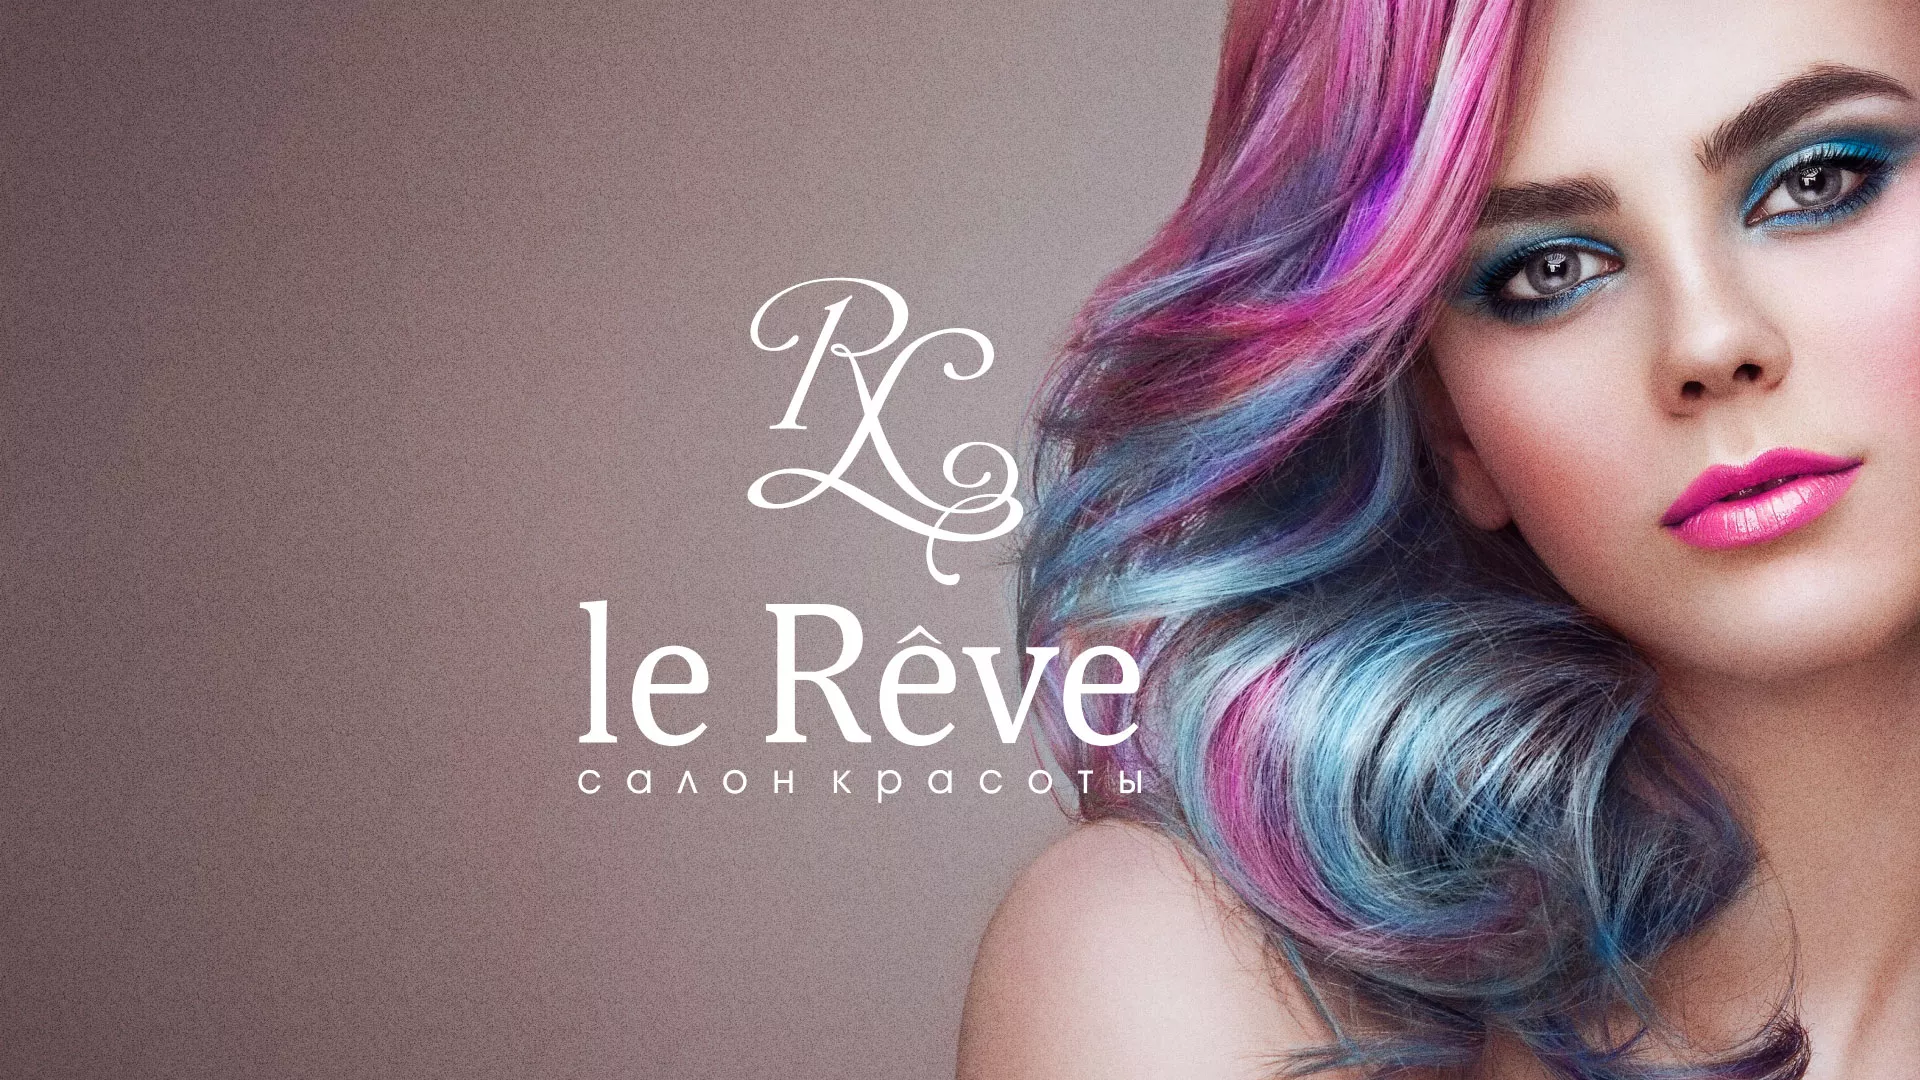 Создание сайта для салона красоты «Le Reve» в Костроме